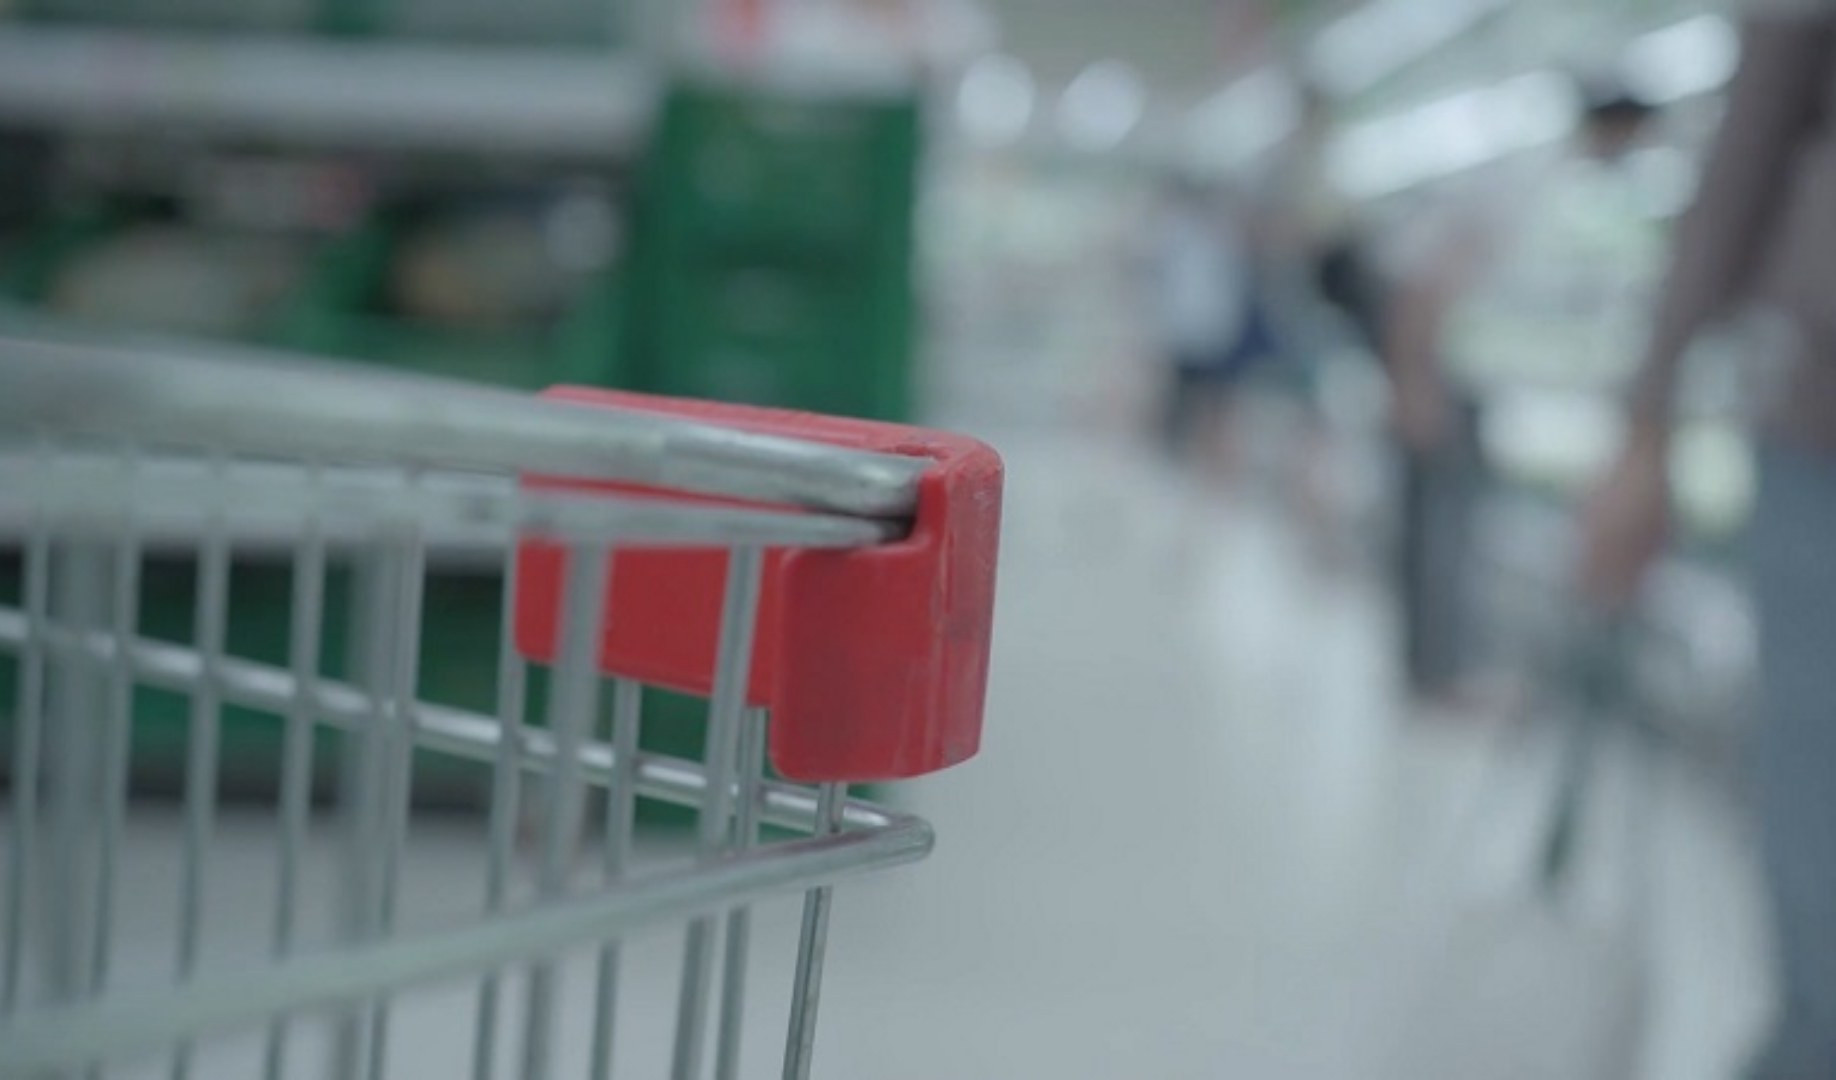 Genova: prova a rubare in un supermercato, scoperto lancia una bottiglia di vetro contro cliente